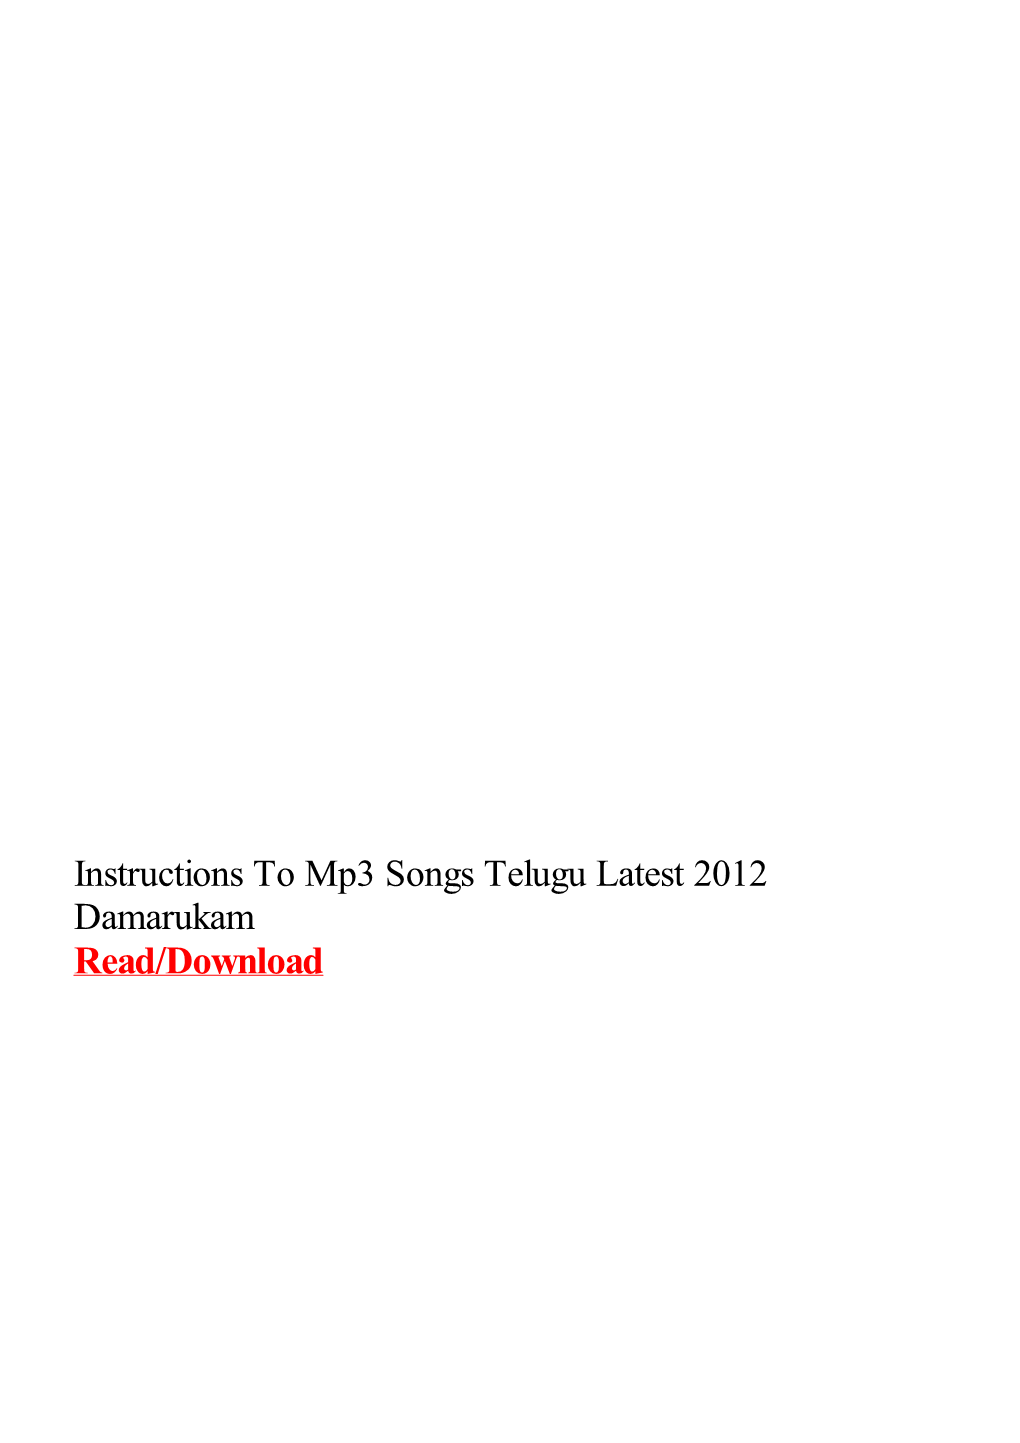 Instructions to Mp3 Songs Telugu Latest 2012 Damarukam